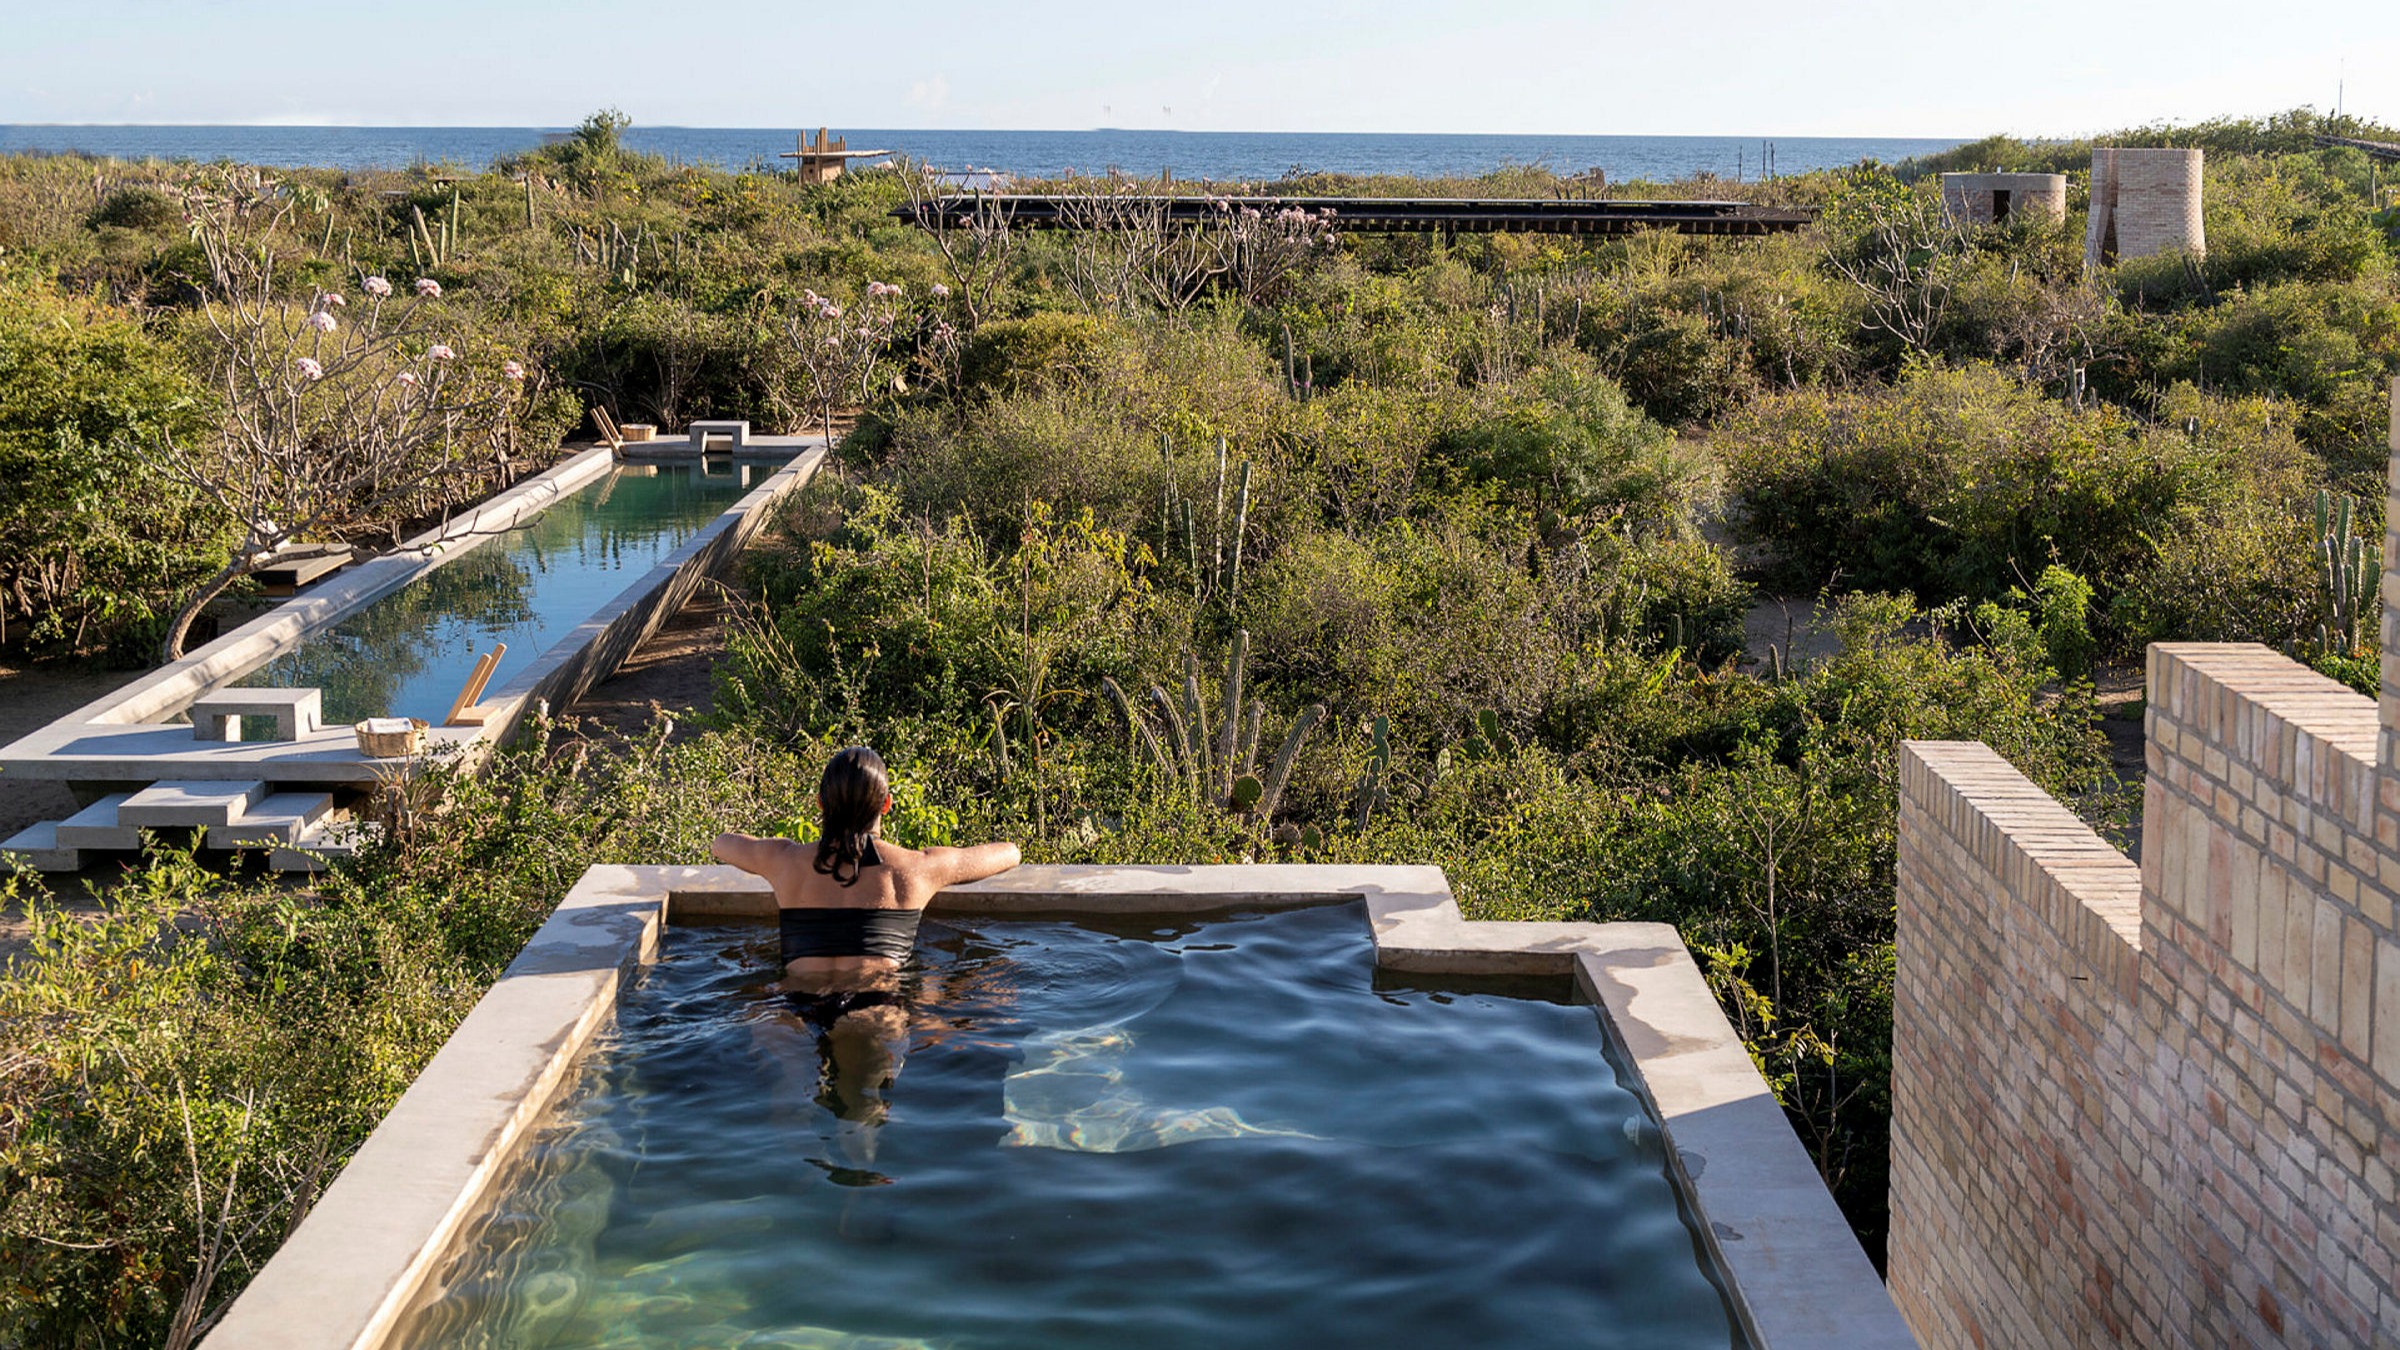 Caducado Cooperación Arena Hotel Terrestre: bold design and blissful escape on Mexico's Oaxaca coast |  Financial Times